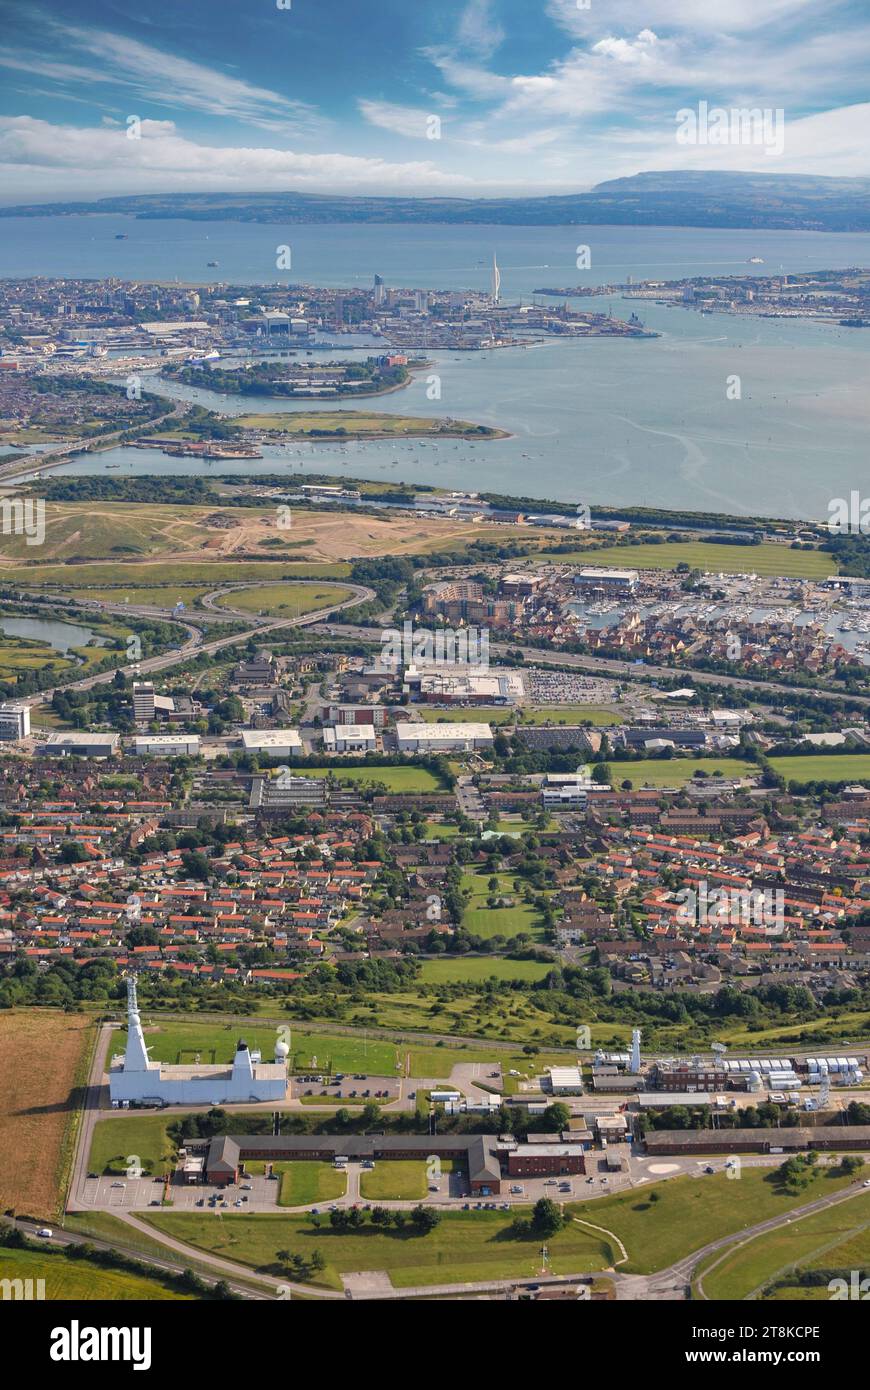 Naval Integration centre d'observation sur les ports surplombant Portsmouth, Hampshire Banque D'Images